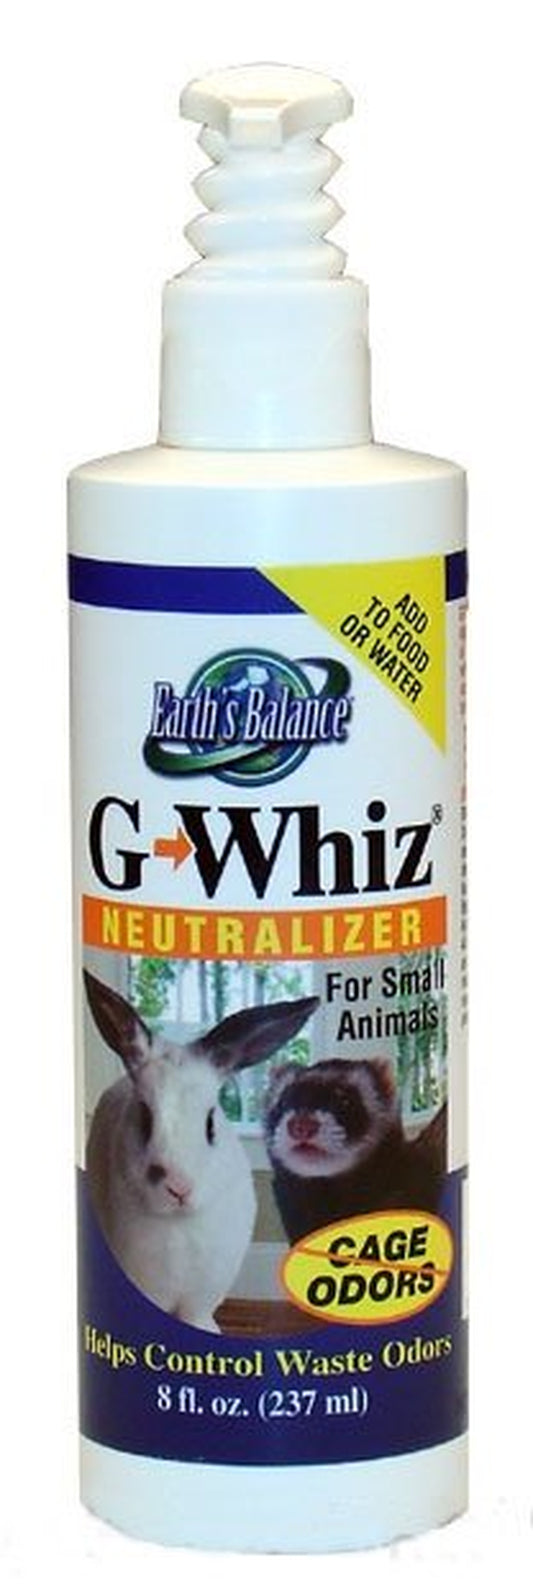 Gwhiz Neutralizer for Small Animals 8 Fl. Oz.